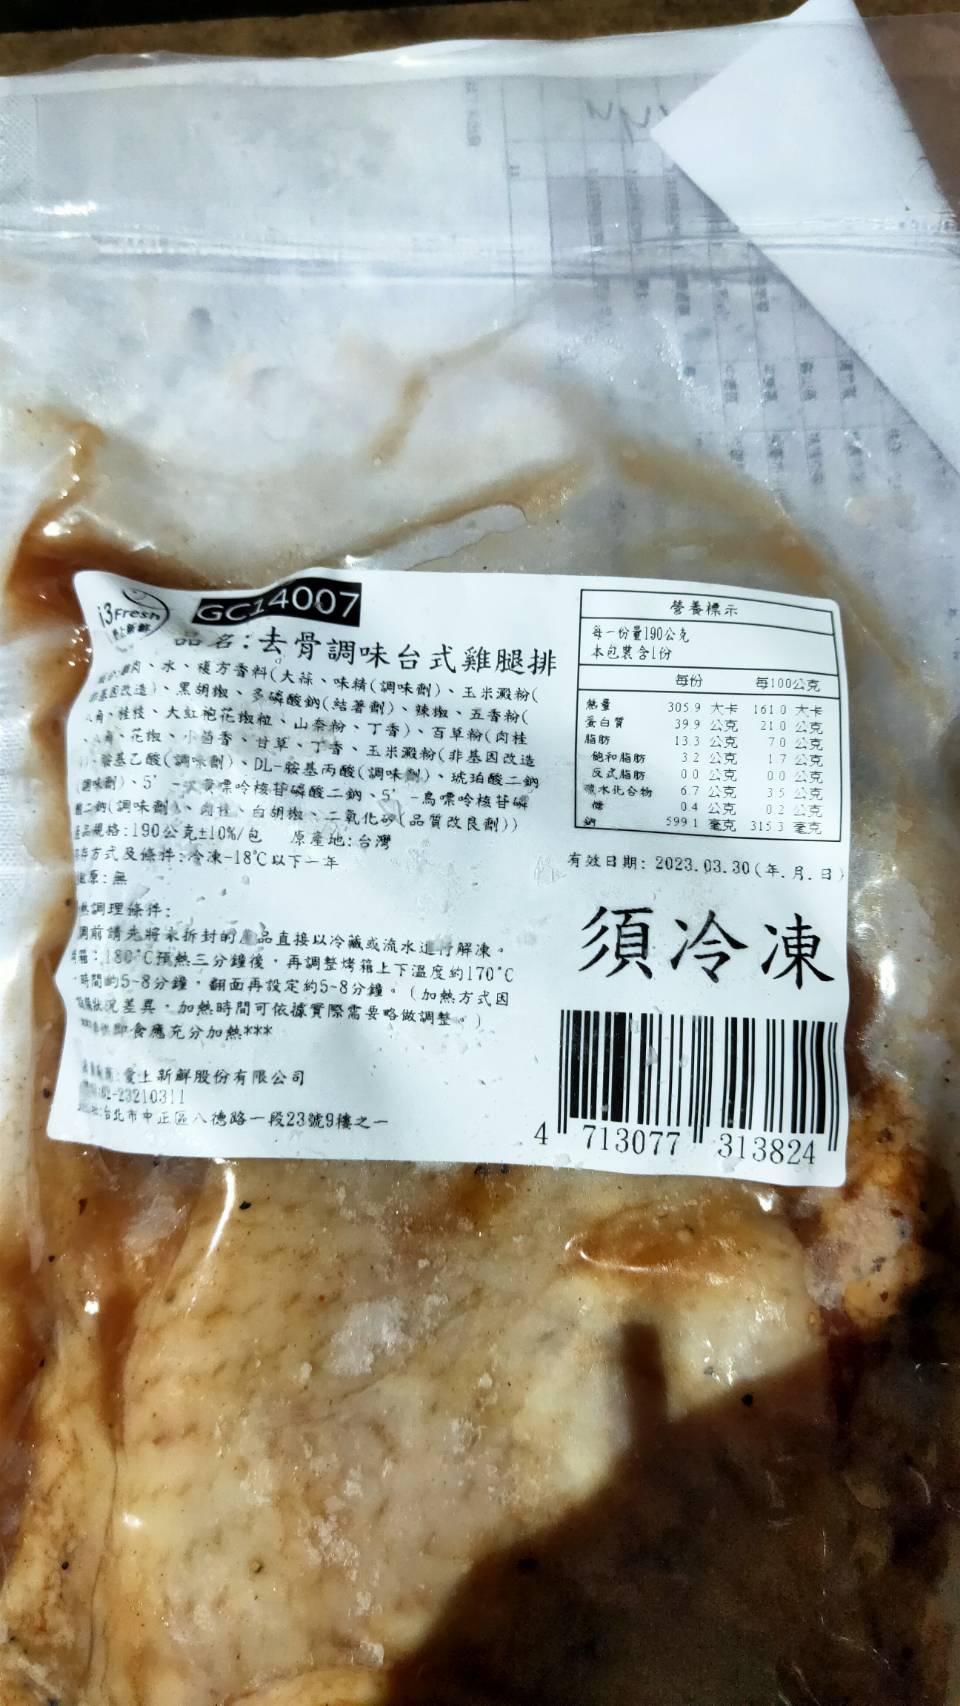       【愛上吃肉】去骨調味雞腿排12包 190g/包(紐奧良/香辣/塔香